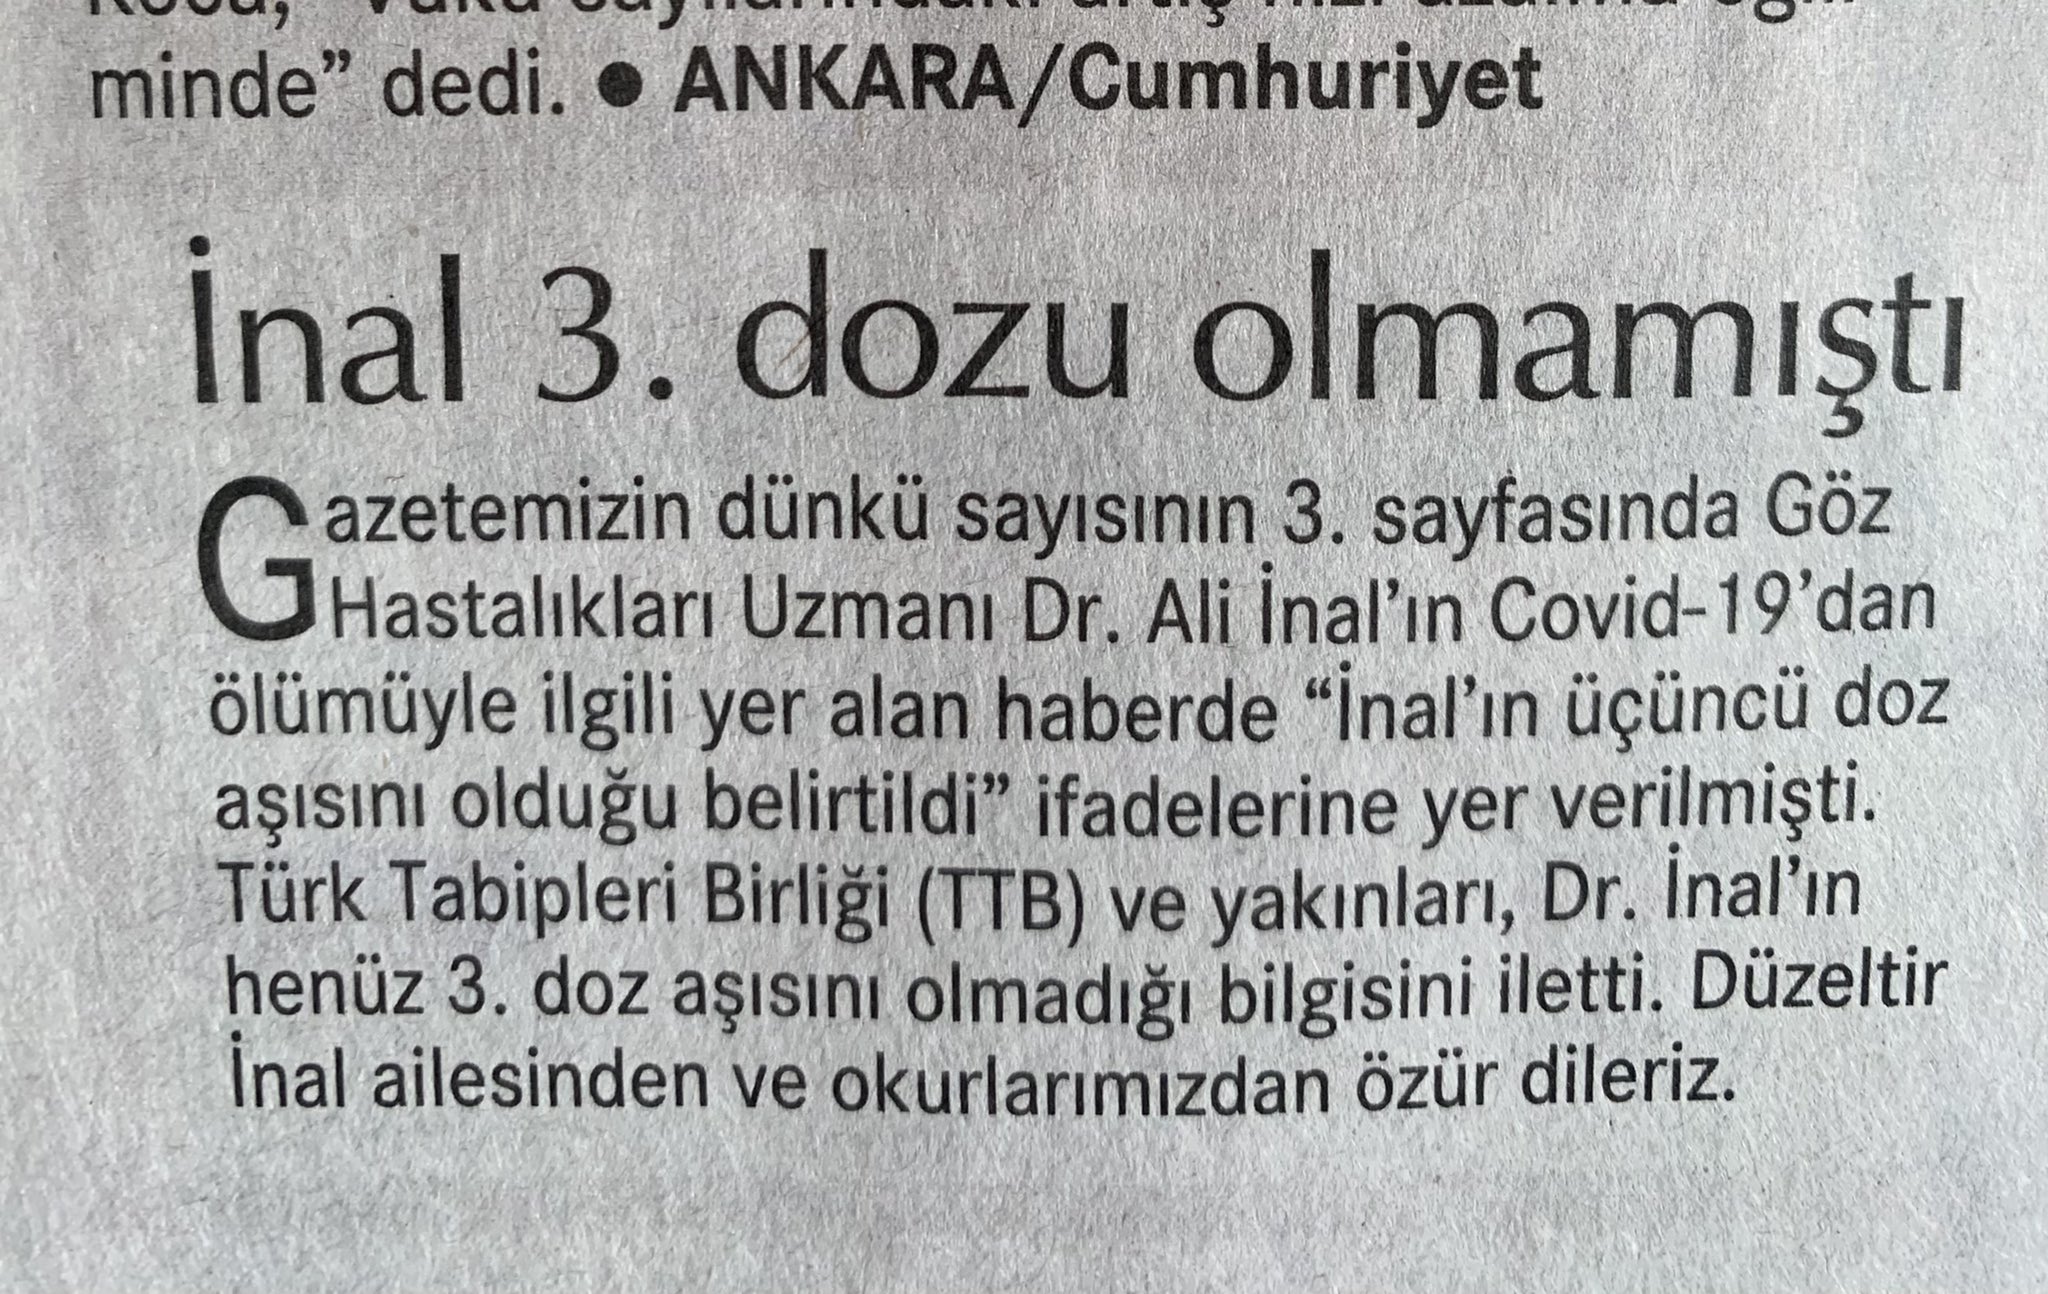 Istanbul Tabip Odasi On Twitter Cumhuriyet Gazetesi Dun Yayimladigi Ve Covid 19 Asisina Guvensizlik Yaratabilecek Haberini Duzeltti Meslektasimiz 3 Doz Asi Olmaya Firsat Bulamamisti Risk Grubunda Yer Alan Ve Daha Once 2 Doz